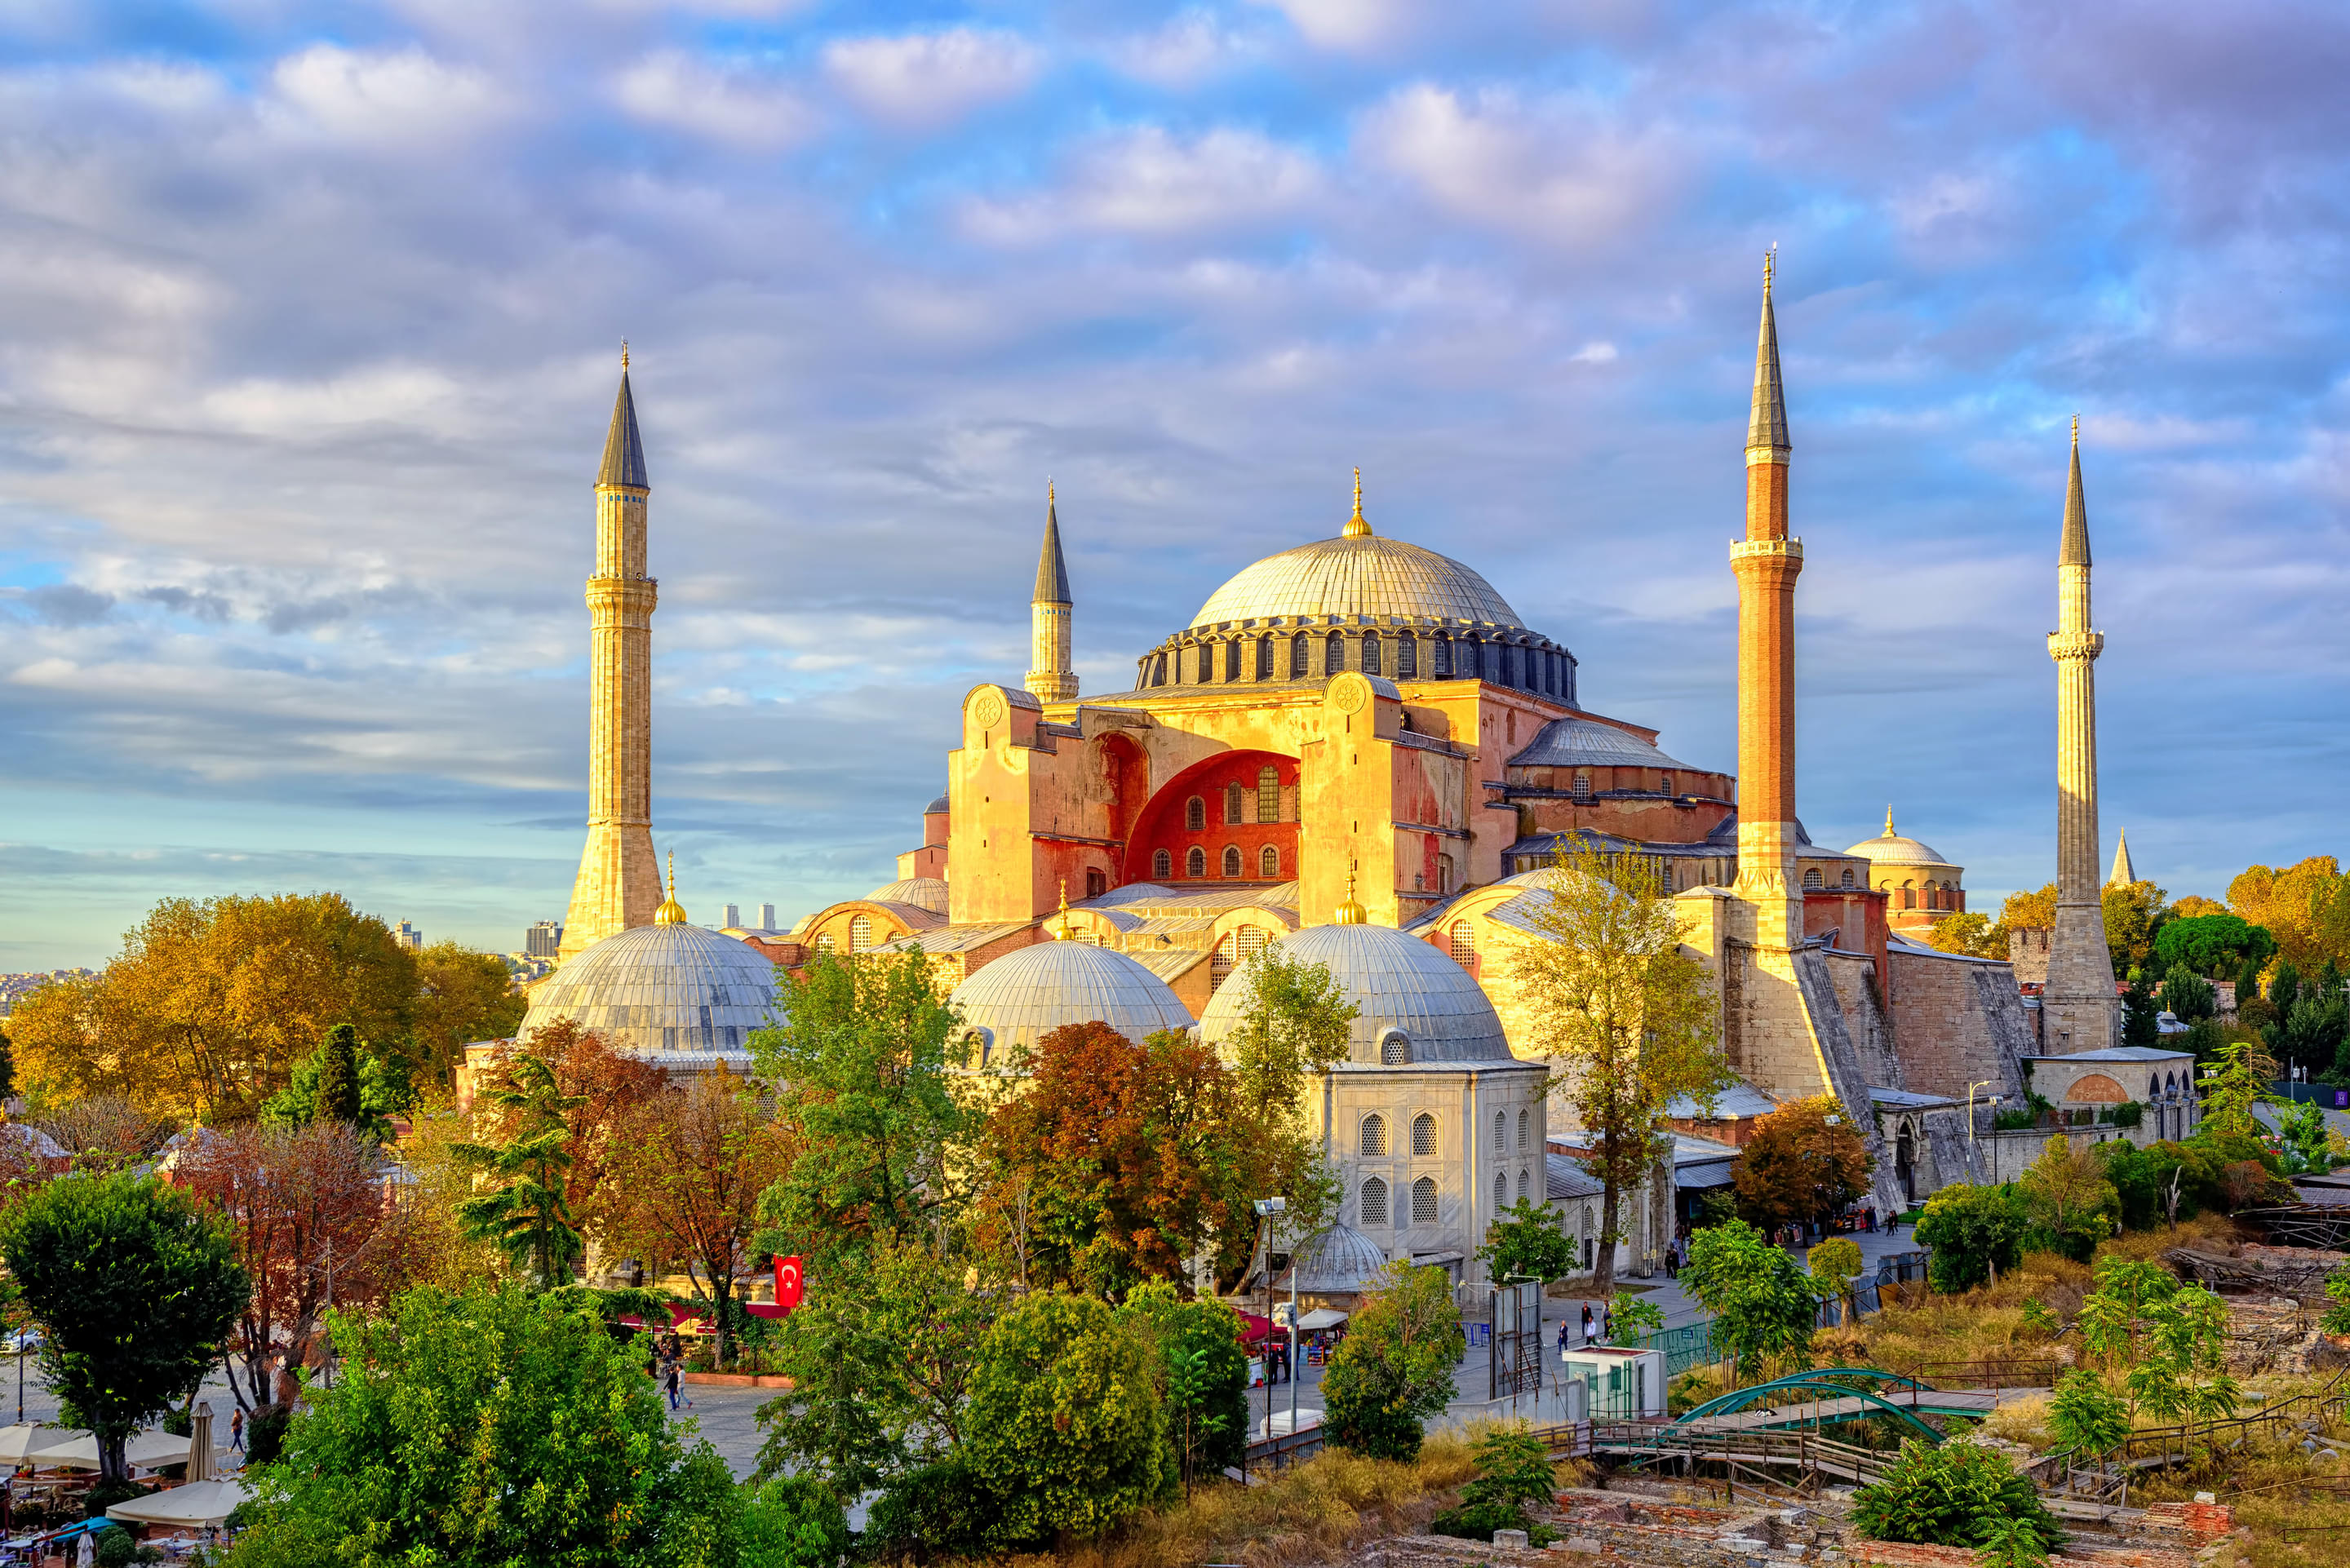 Hagia Sophia Overview